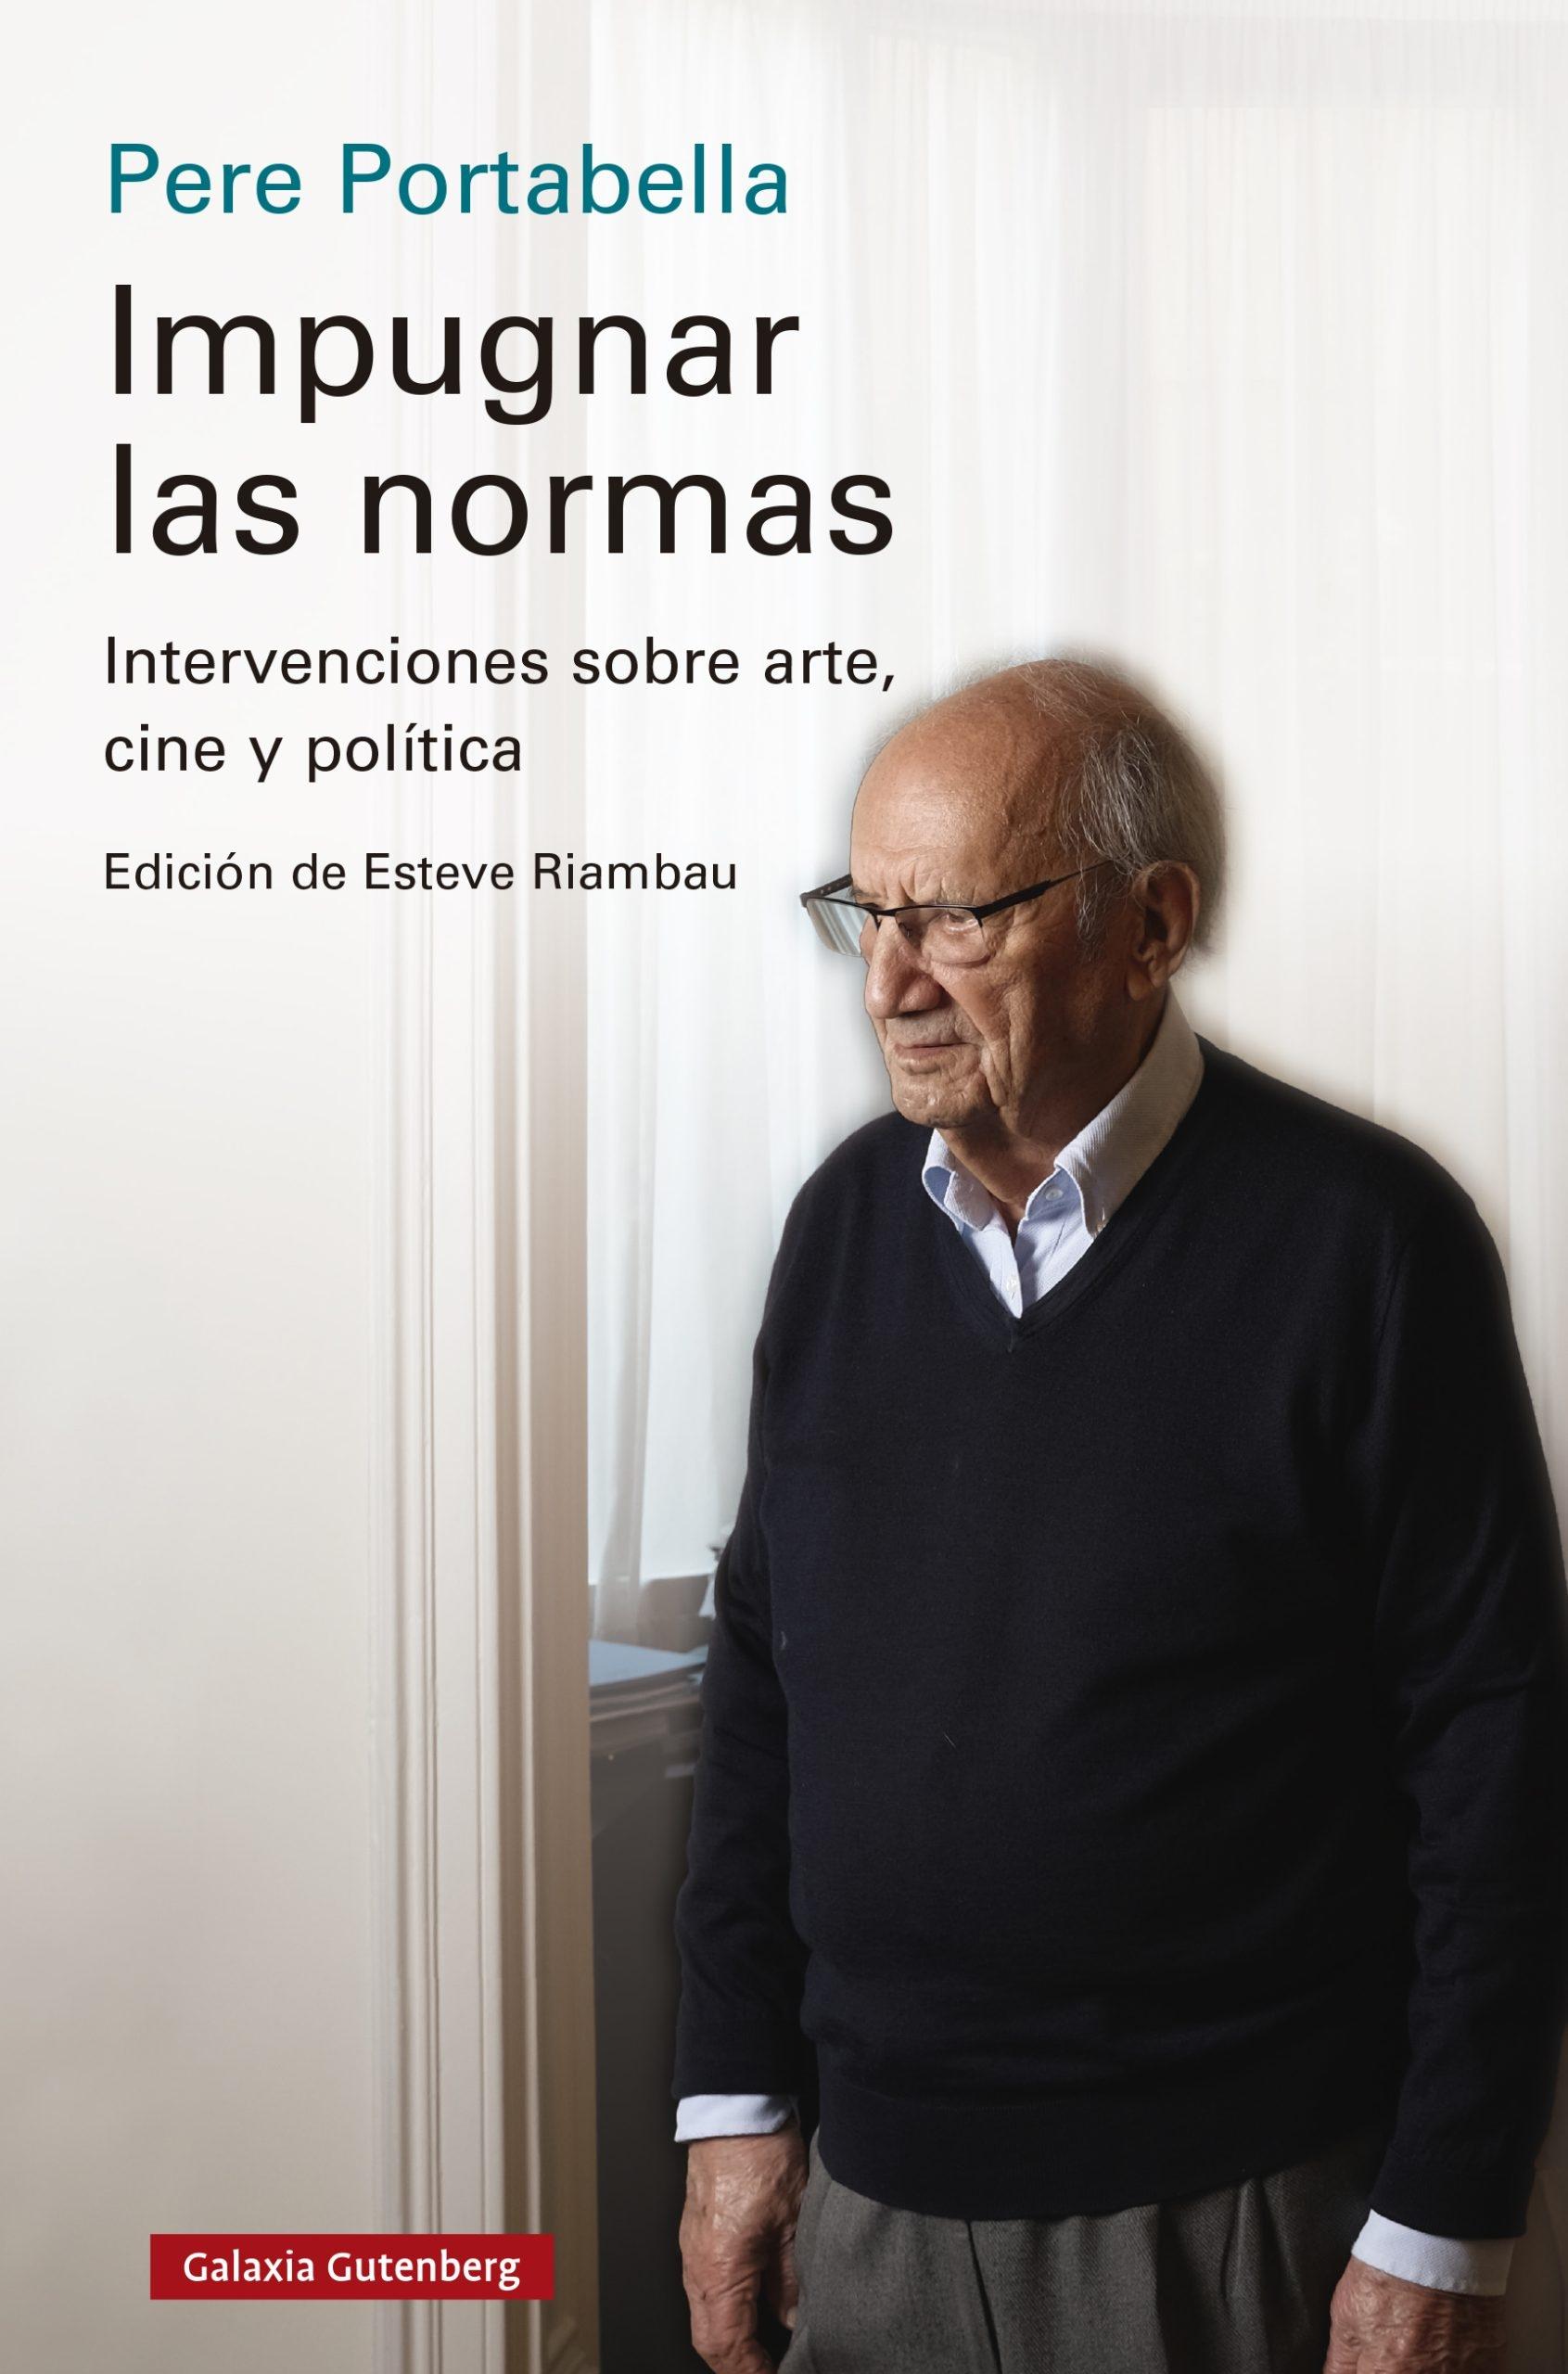 IMPUGNAR LAS NORMAS "INTERVENCIONES SOBRE ARTE, CINE Y POLITICA"